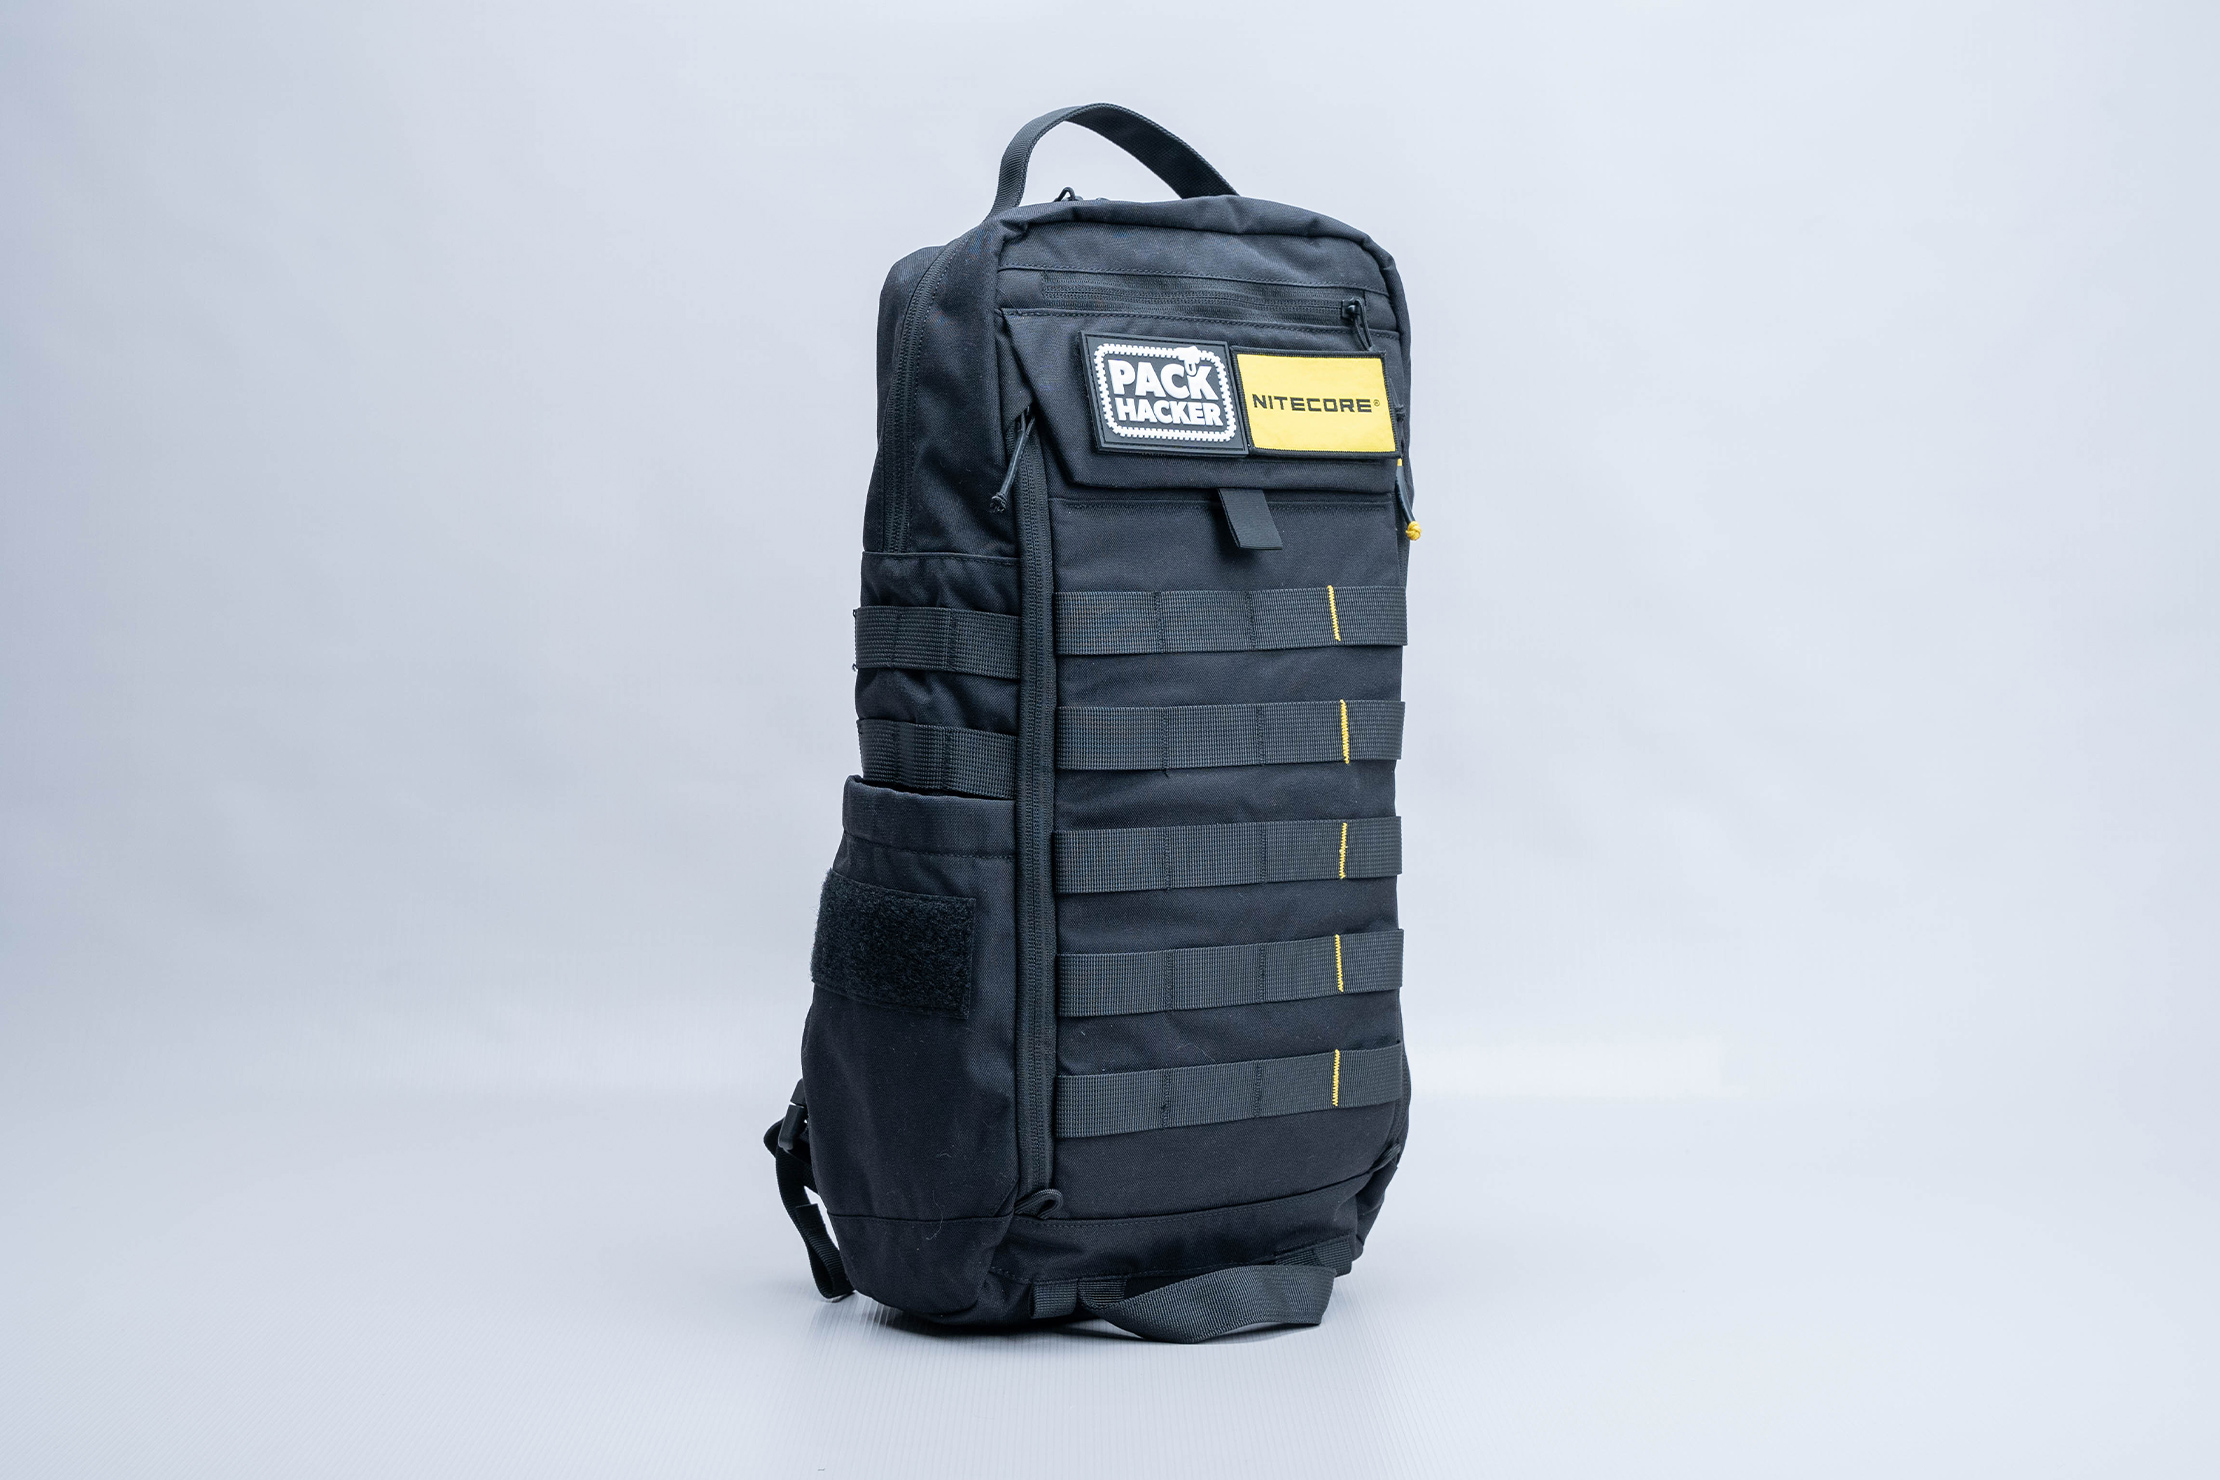 NITECORE BP18 Commuter Backpack Full